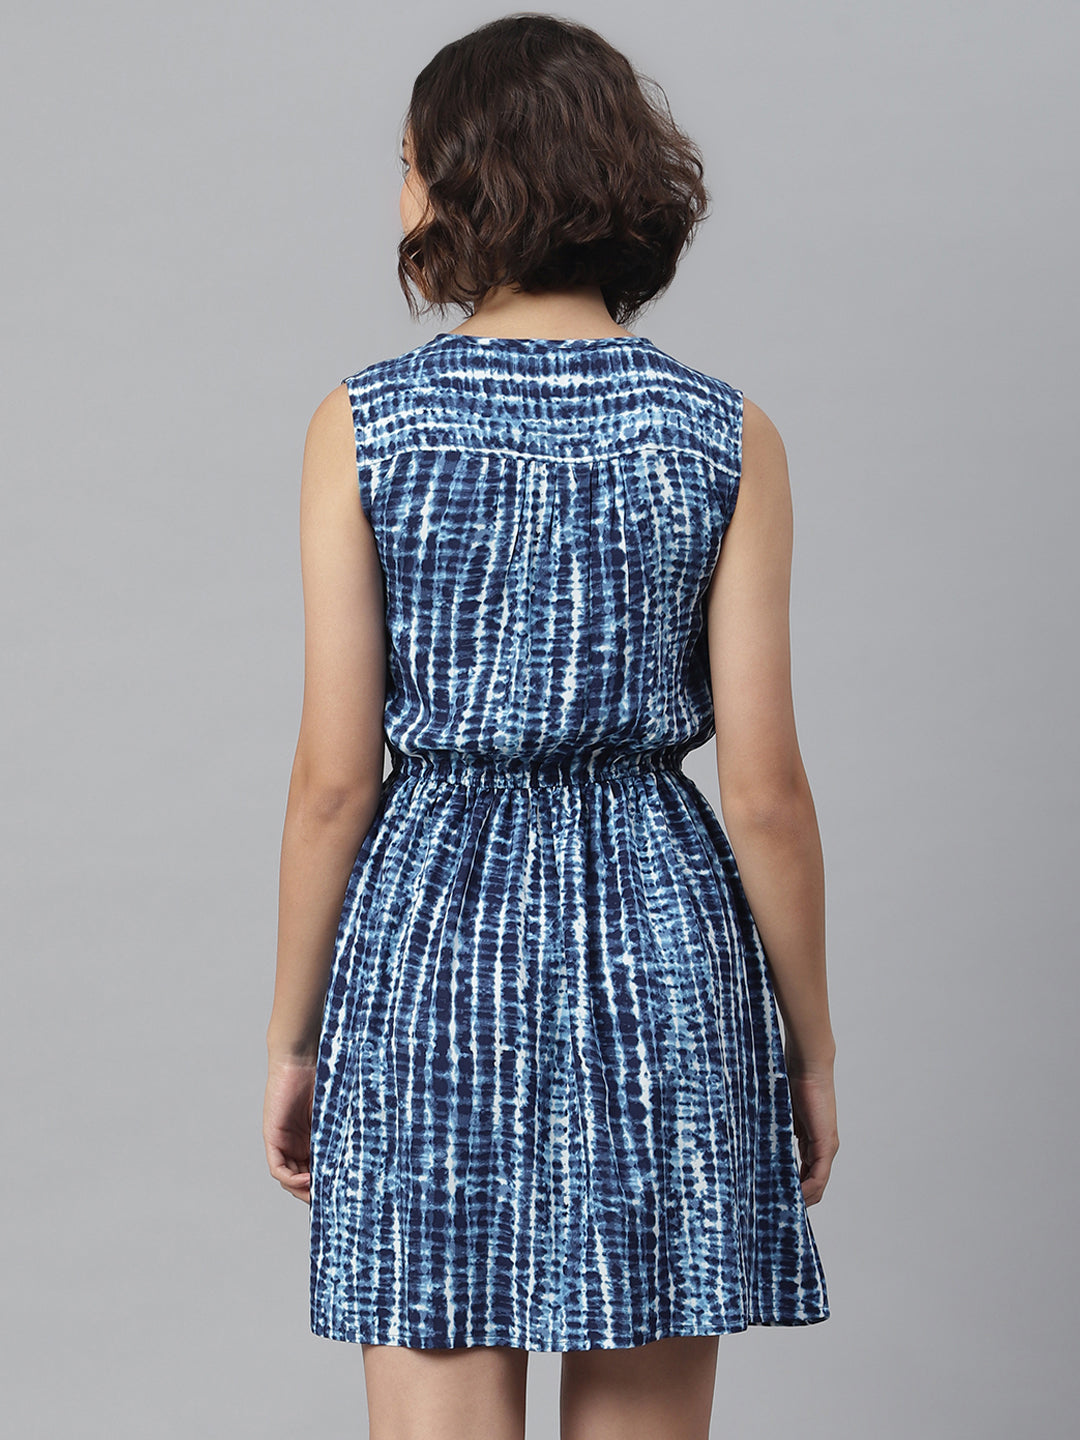 Women's Blue Tie & Dye Printed Dress - StyleStone